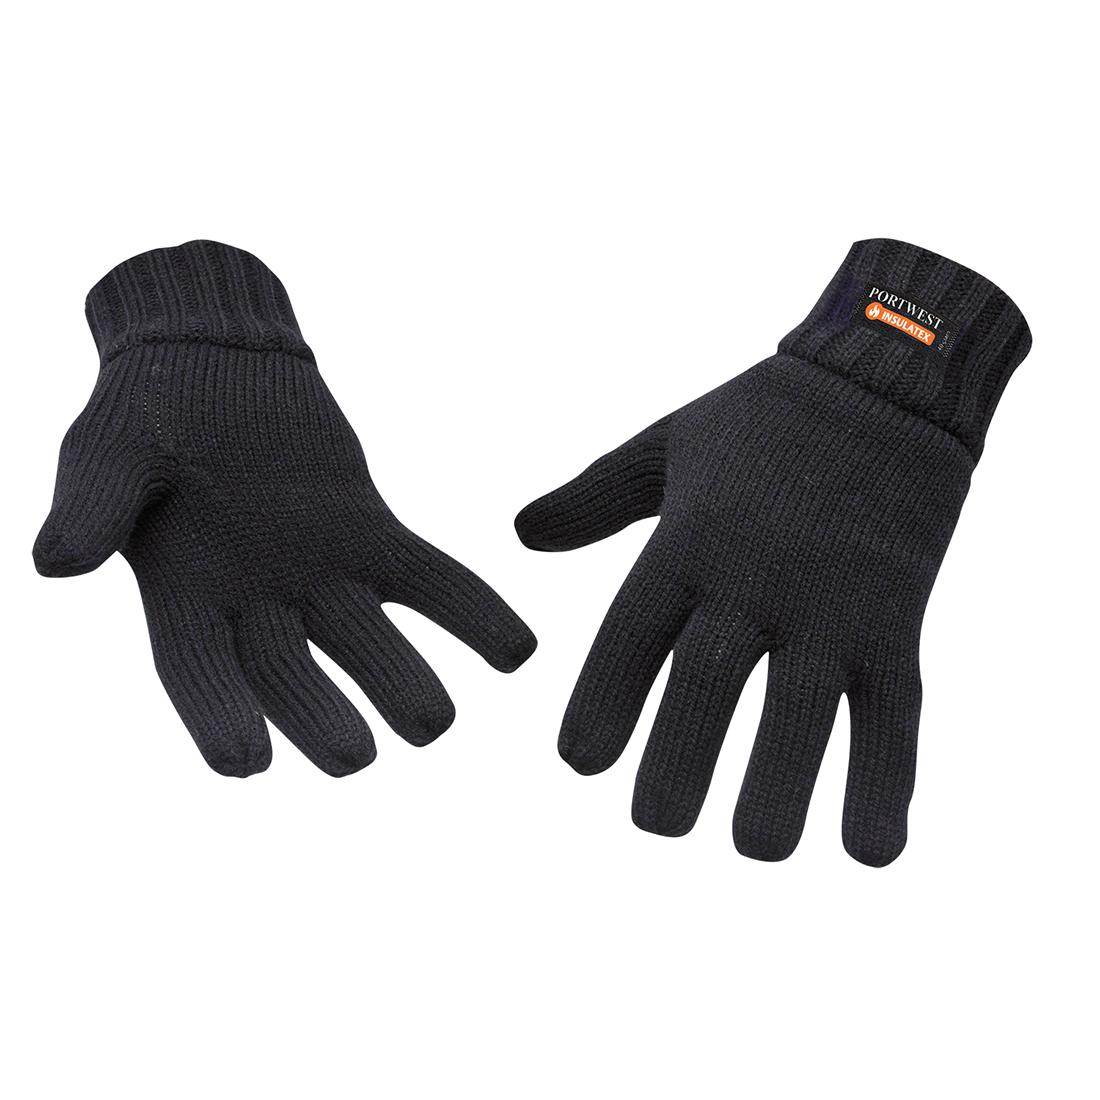 (ポートウエスト) Portwest ユニセックス ニット 冬用 手袋 グローブ 作業用手袋 【海外通販】